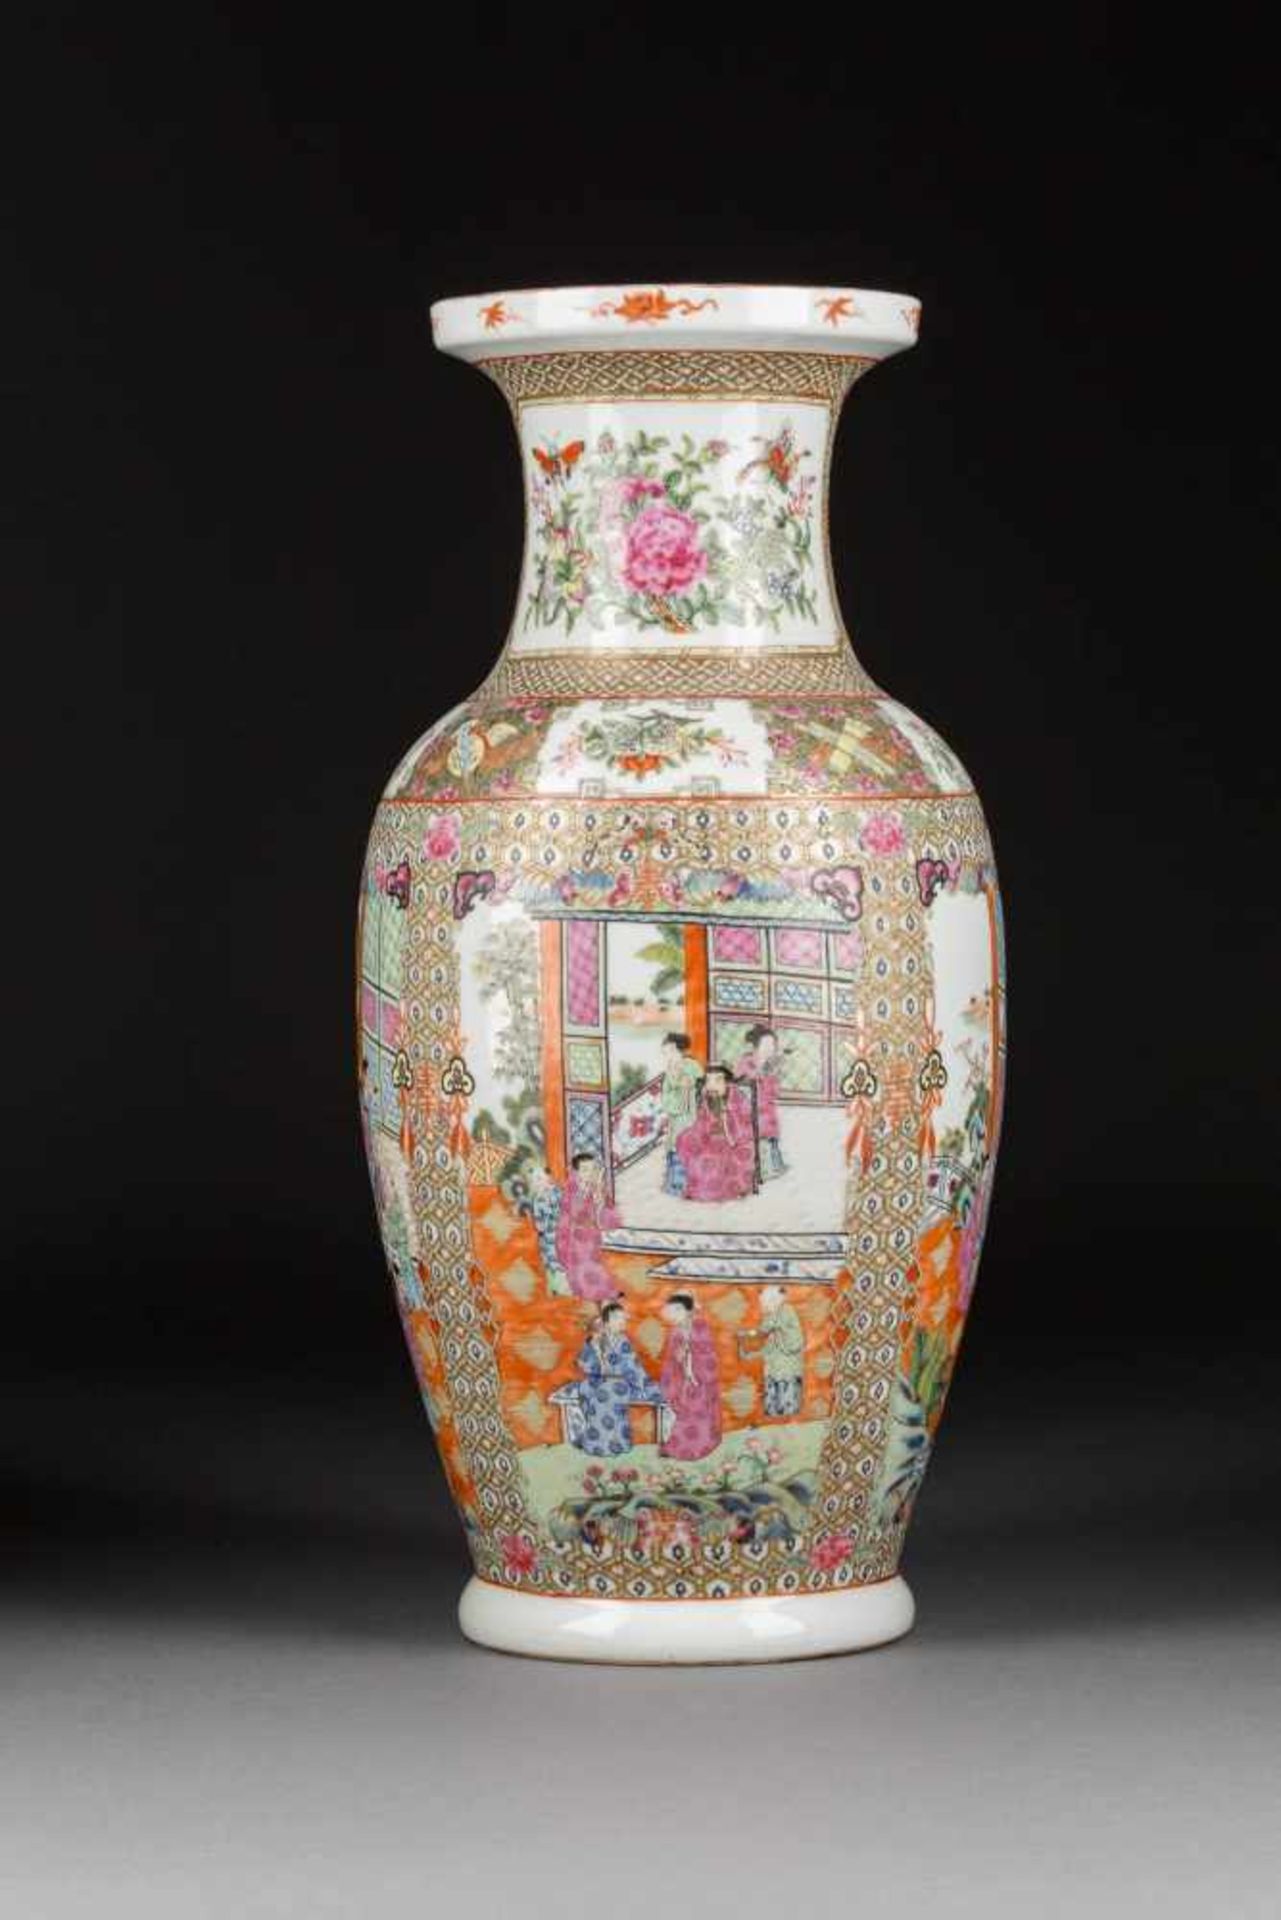 KANTON-VASE MIT FIGÜRLICHEN SZENEN China, um 1900 Porzellan, polychrome Aufglasurbemalung, - Bild 3 aus 4